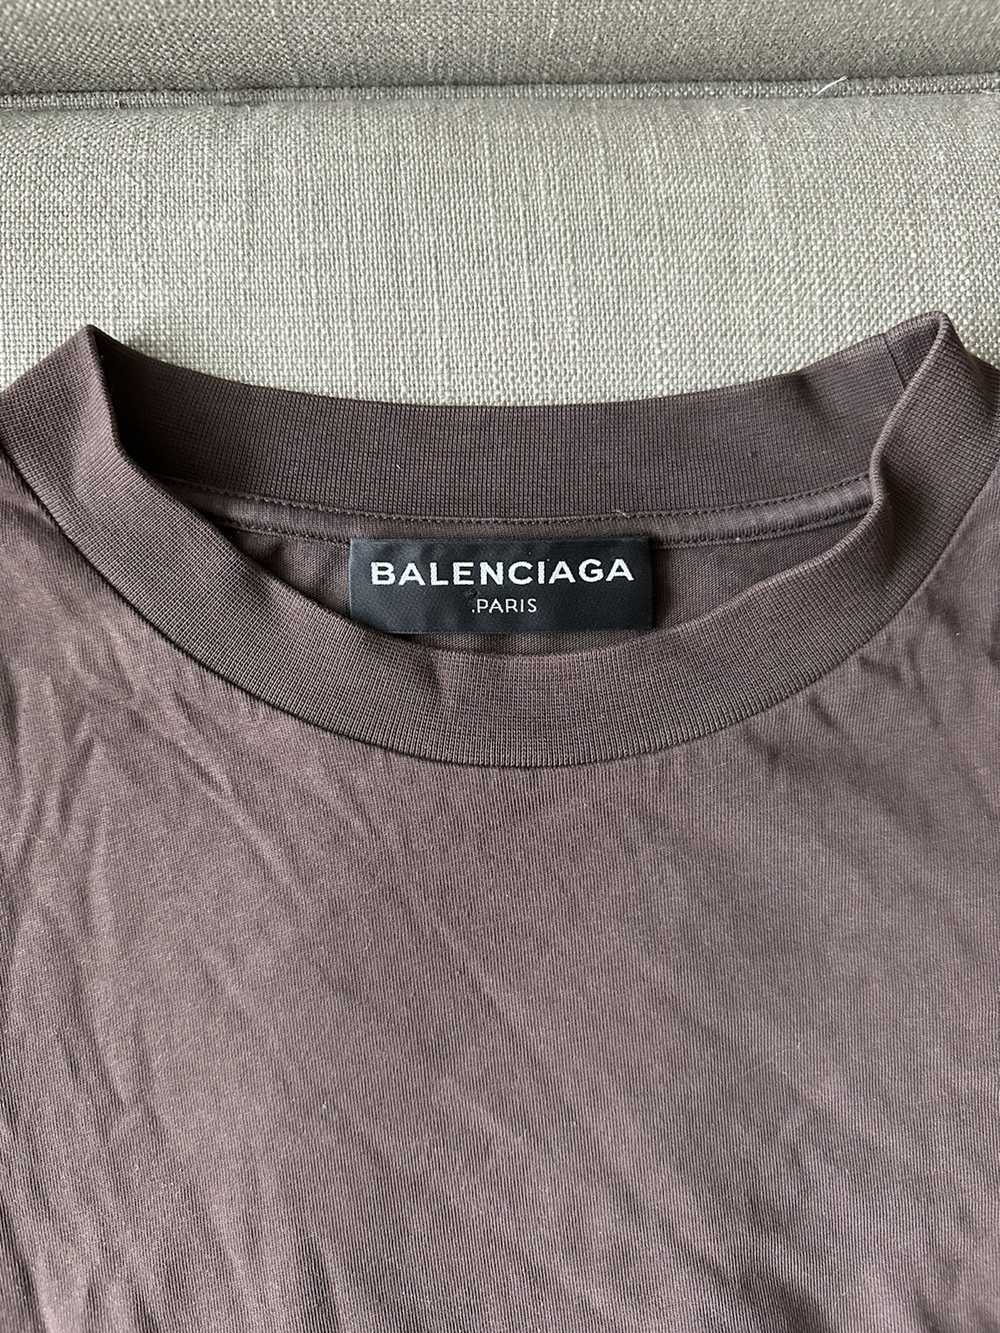 Balenciaga Balenciaga Unisex Size (XL) T-Shirt - image 4